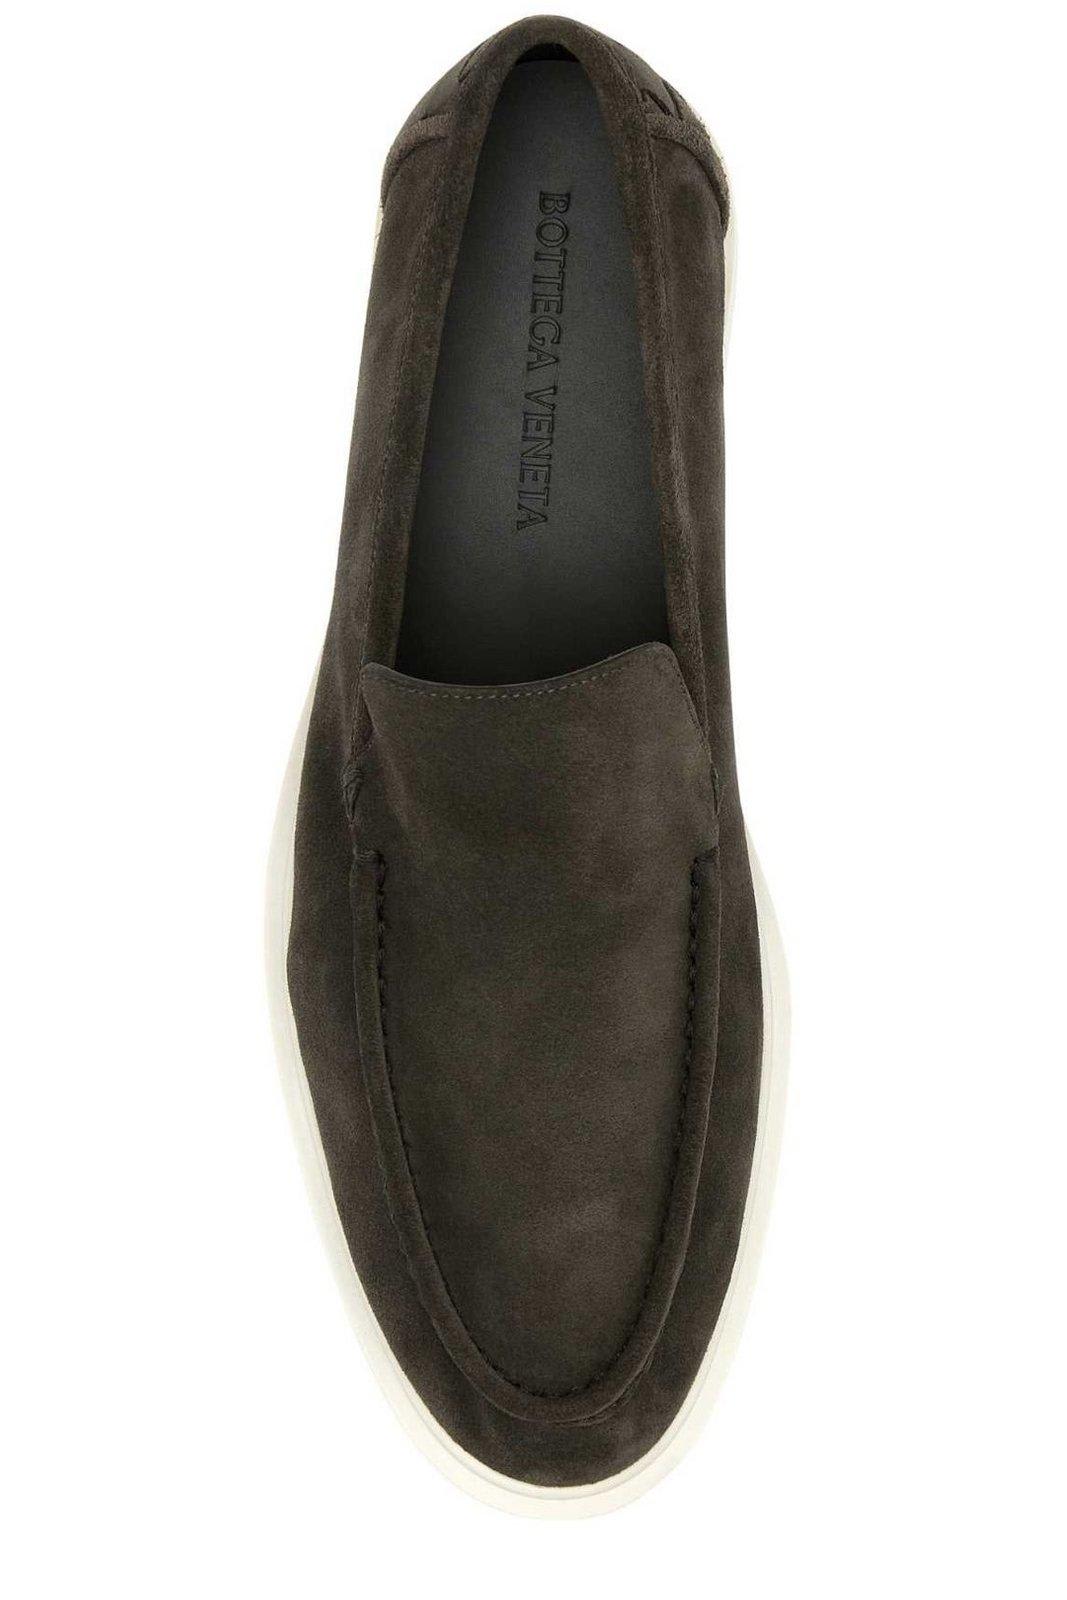 Shop Bottega Veneta Slip-on Loafers In Grey